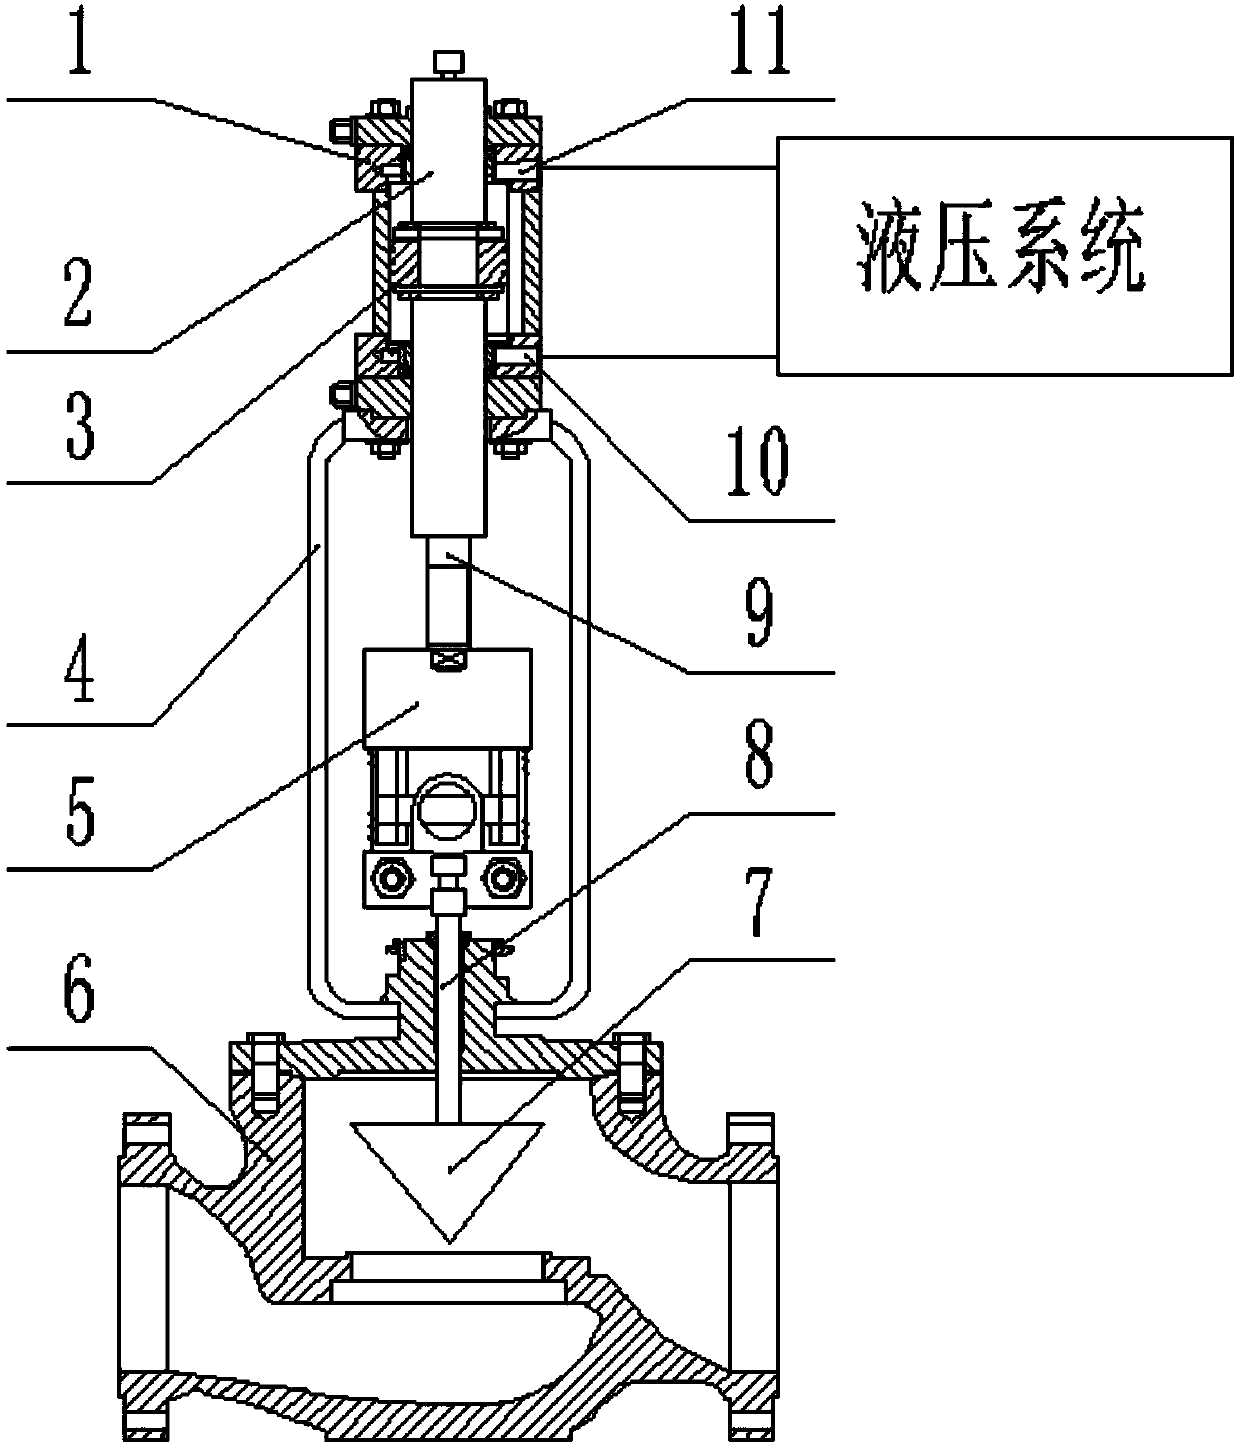 Control valve flexible connection kit